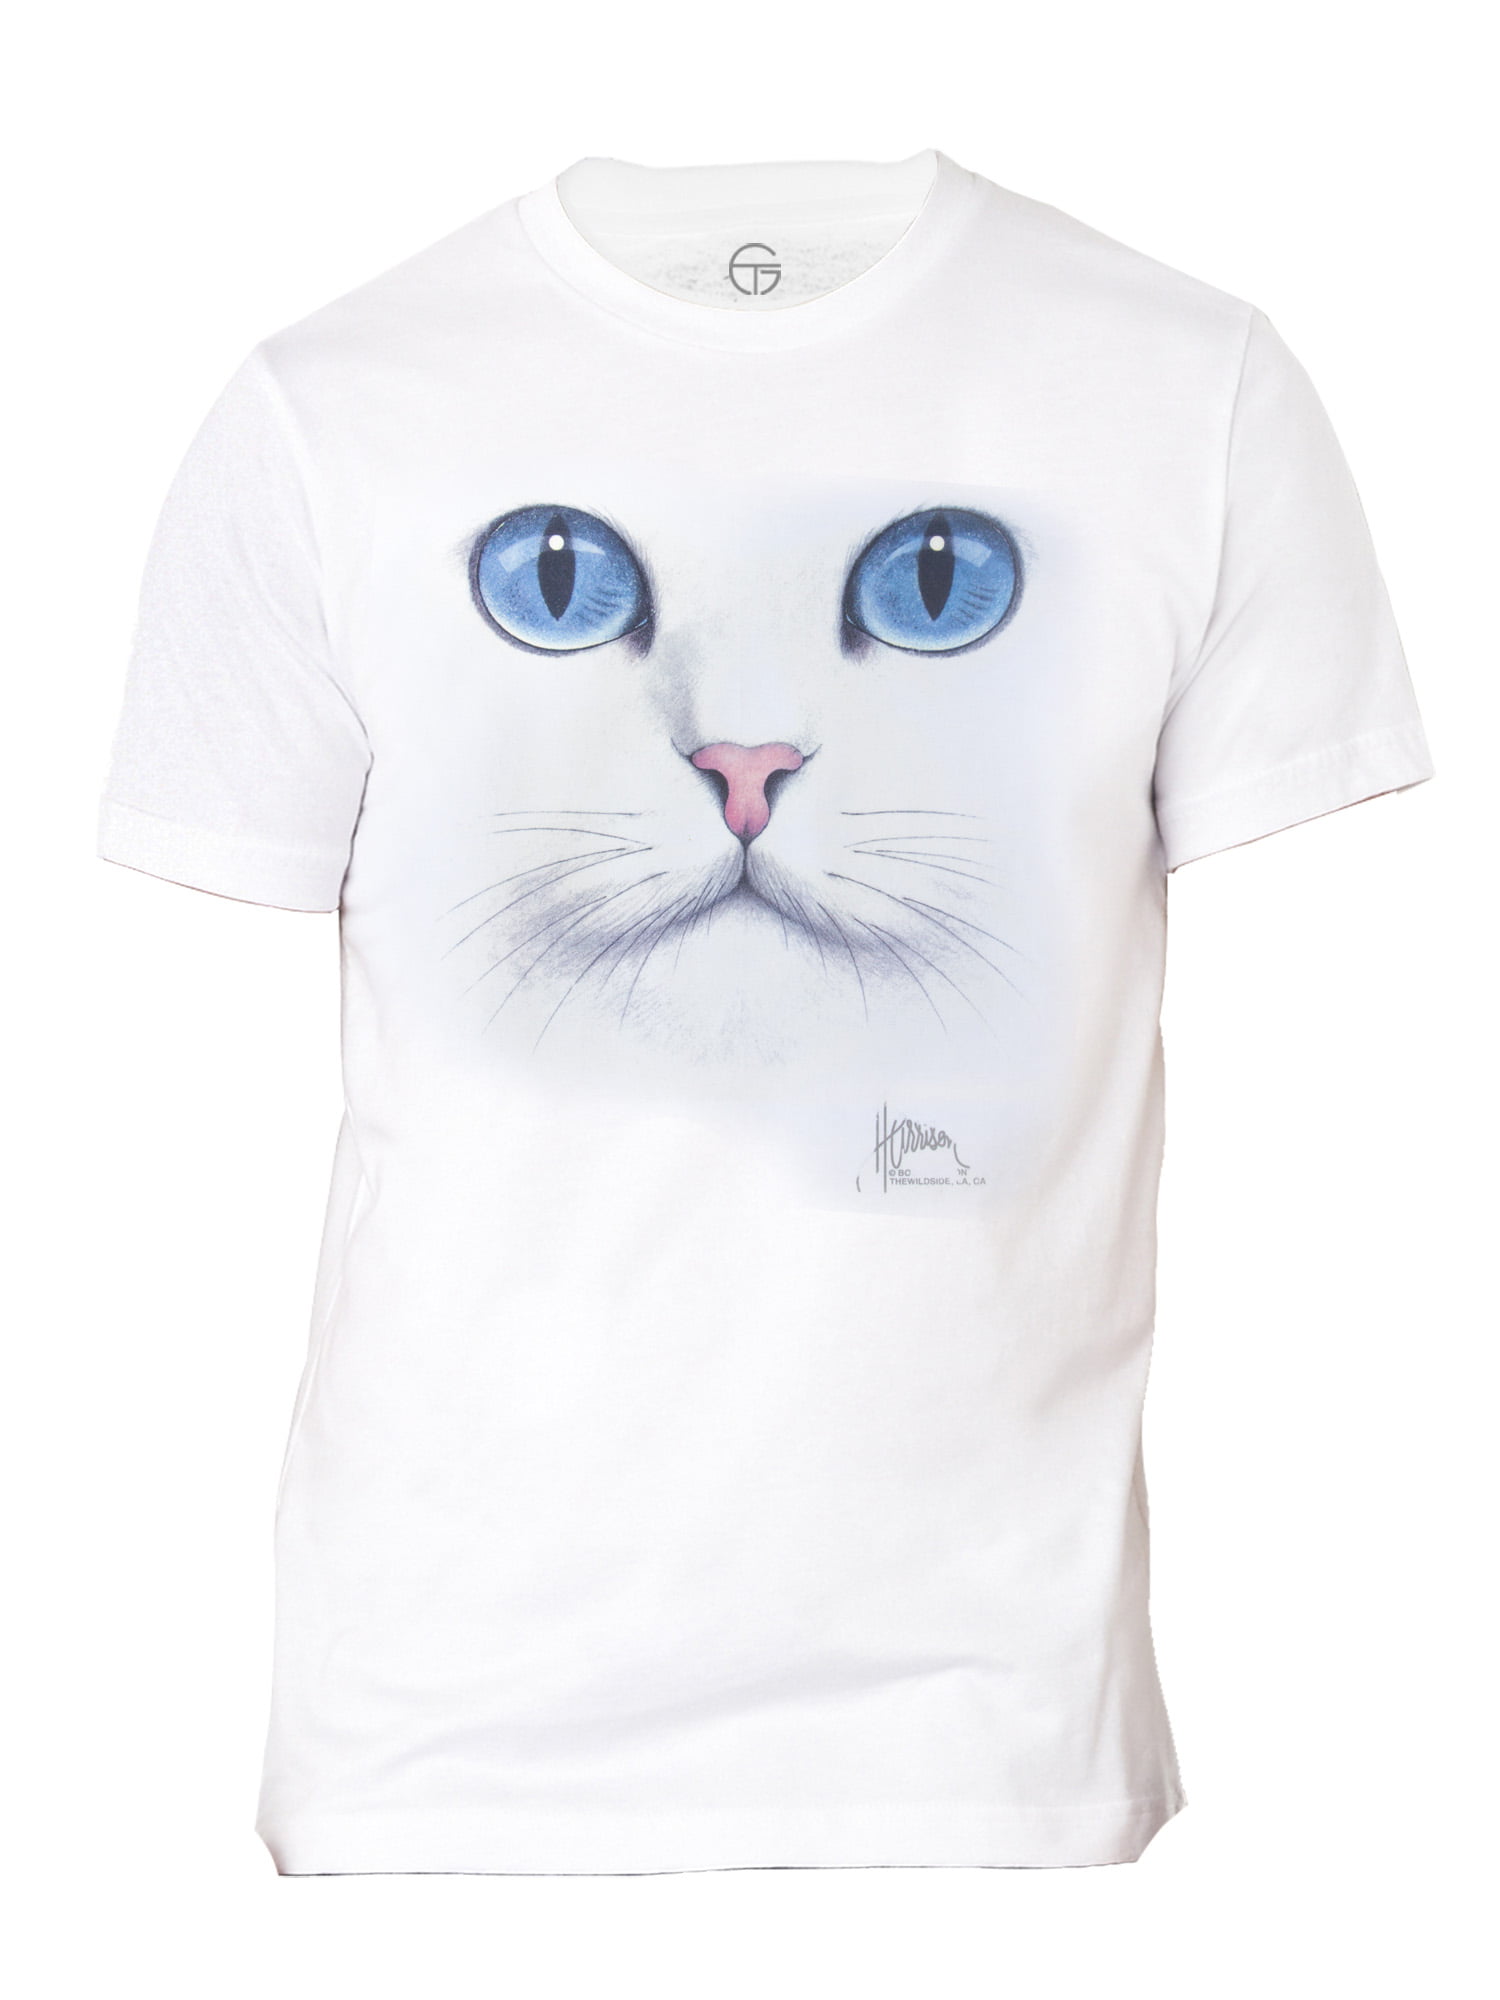 Funny Cat Selfie Shirt Family shirt Best gift ideas Cat Lover shirt Cute Cat T-shirt